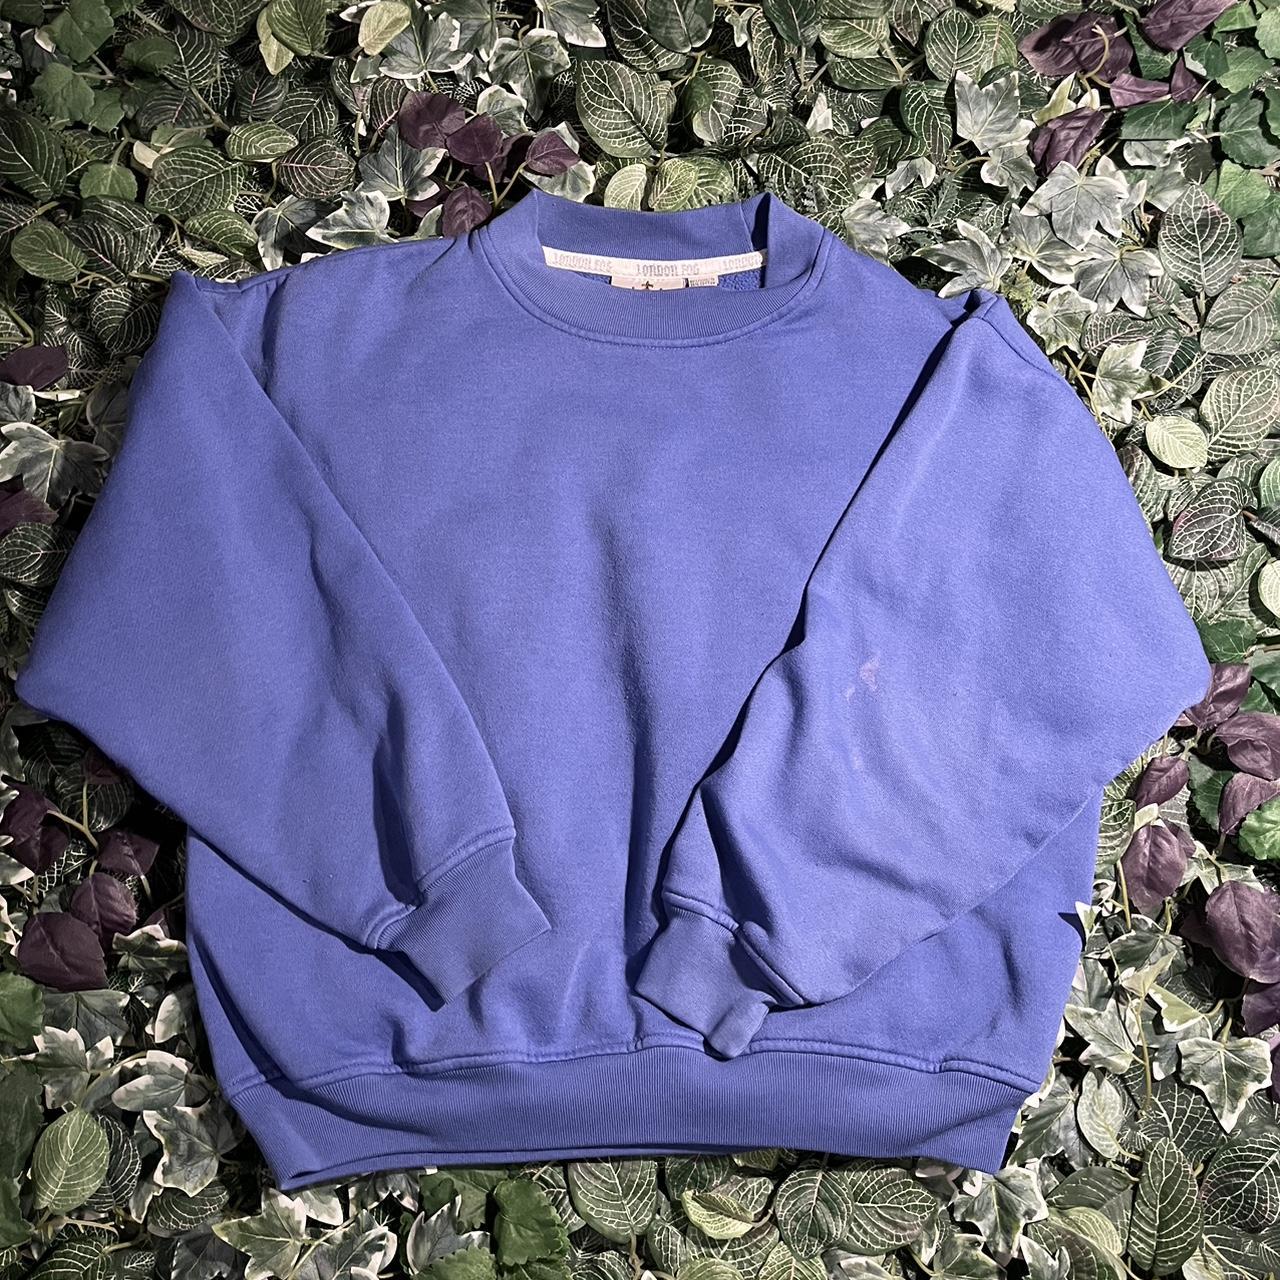 London Fog Men's Blue Sweatshirt